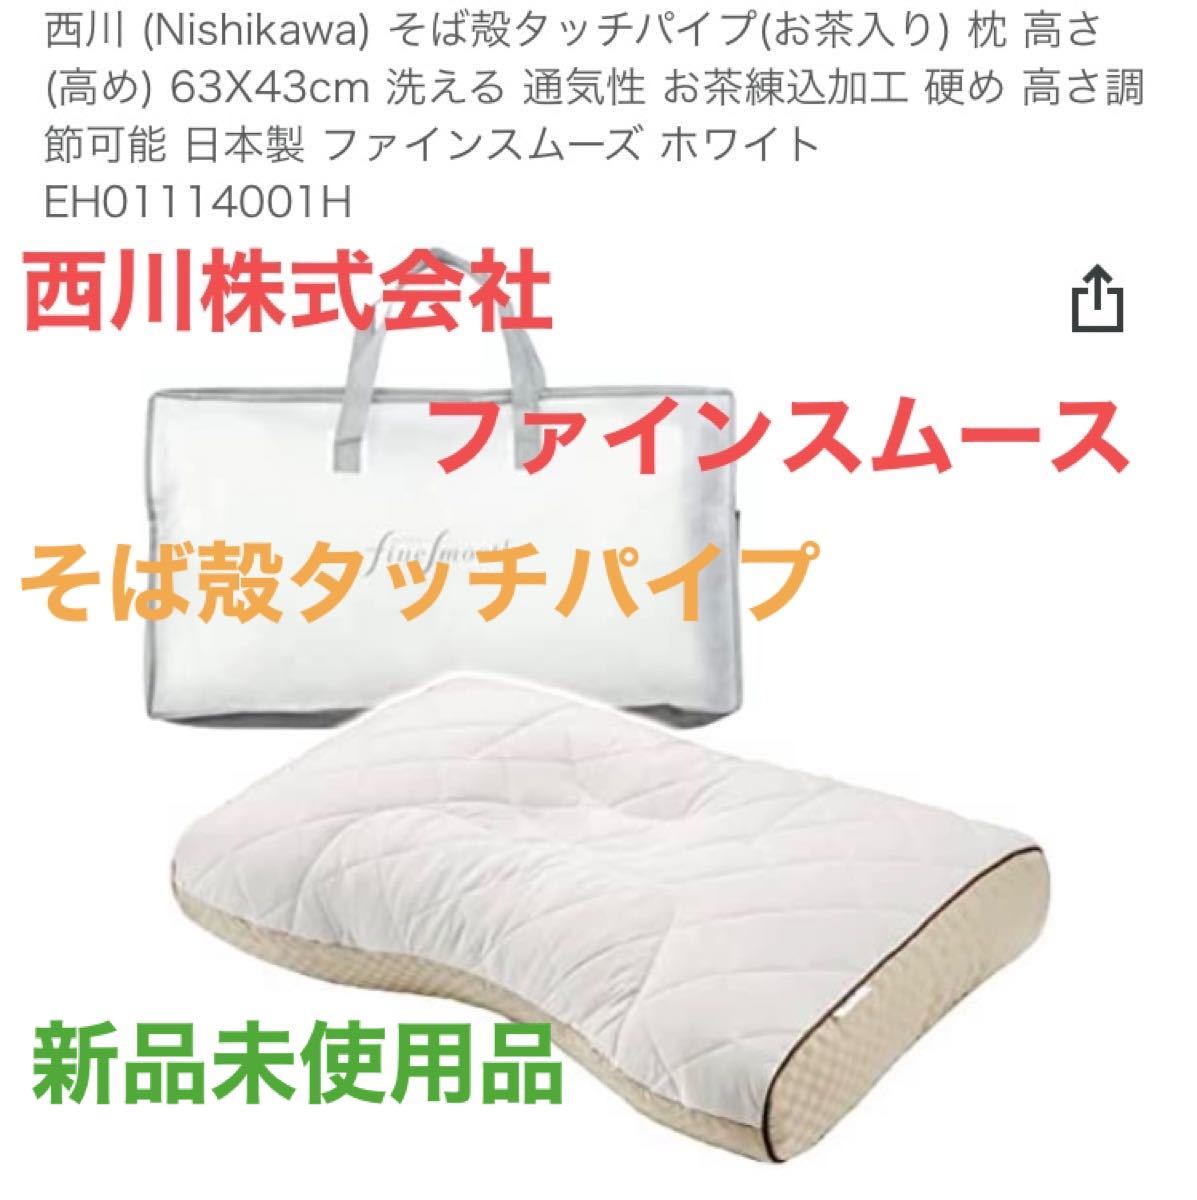 西川 (Nishikawa) フワリーヌ わた枕 70X43cm 洗える 高さ調節可能